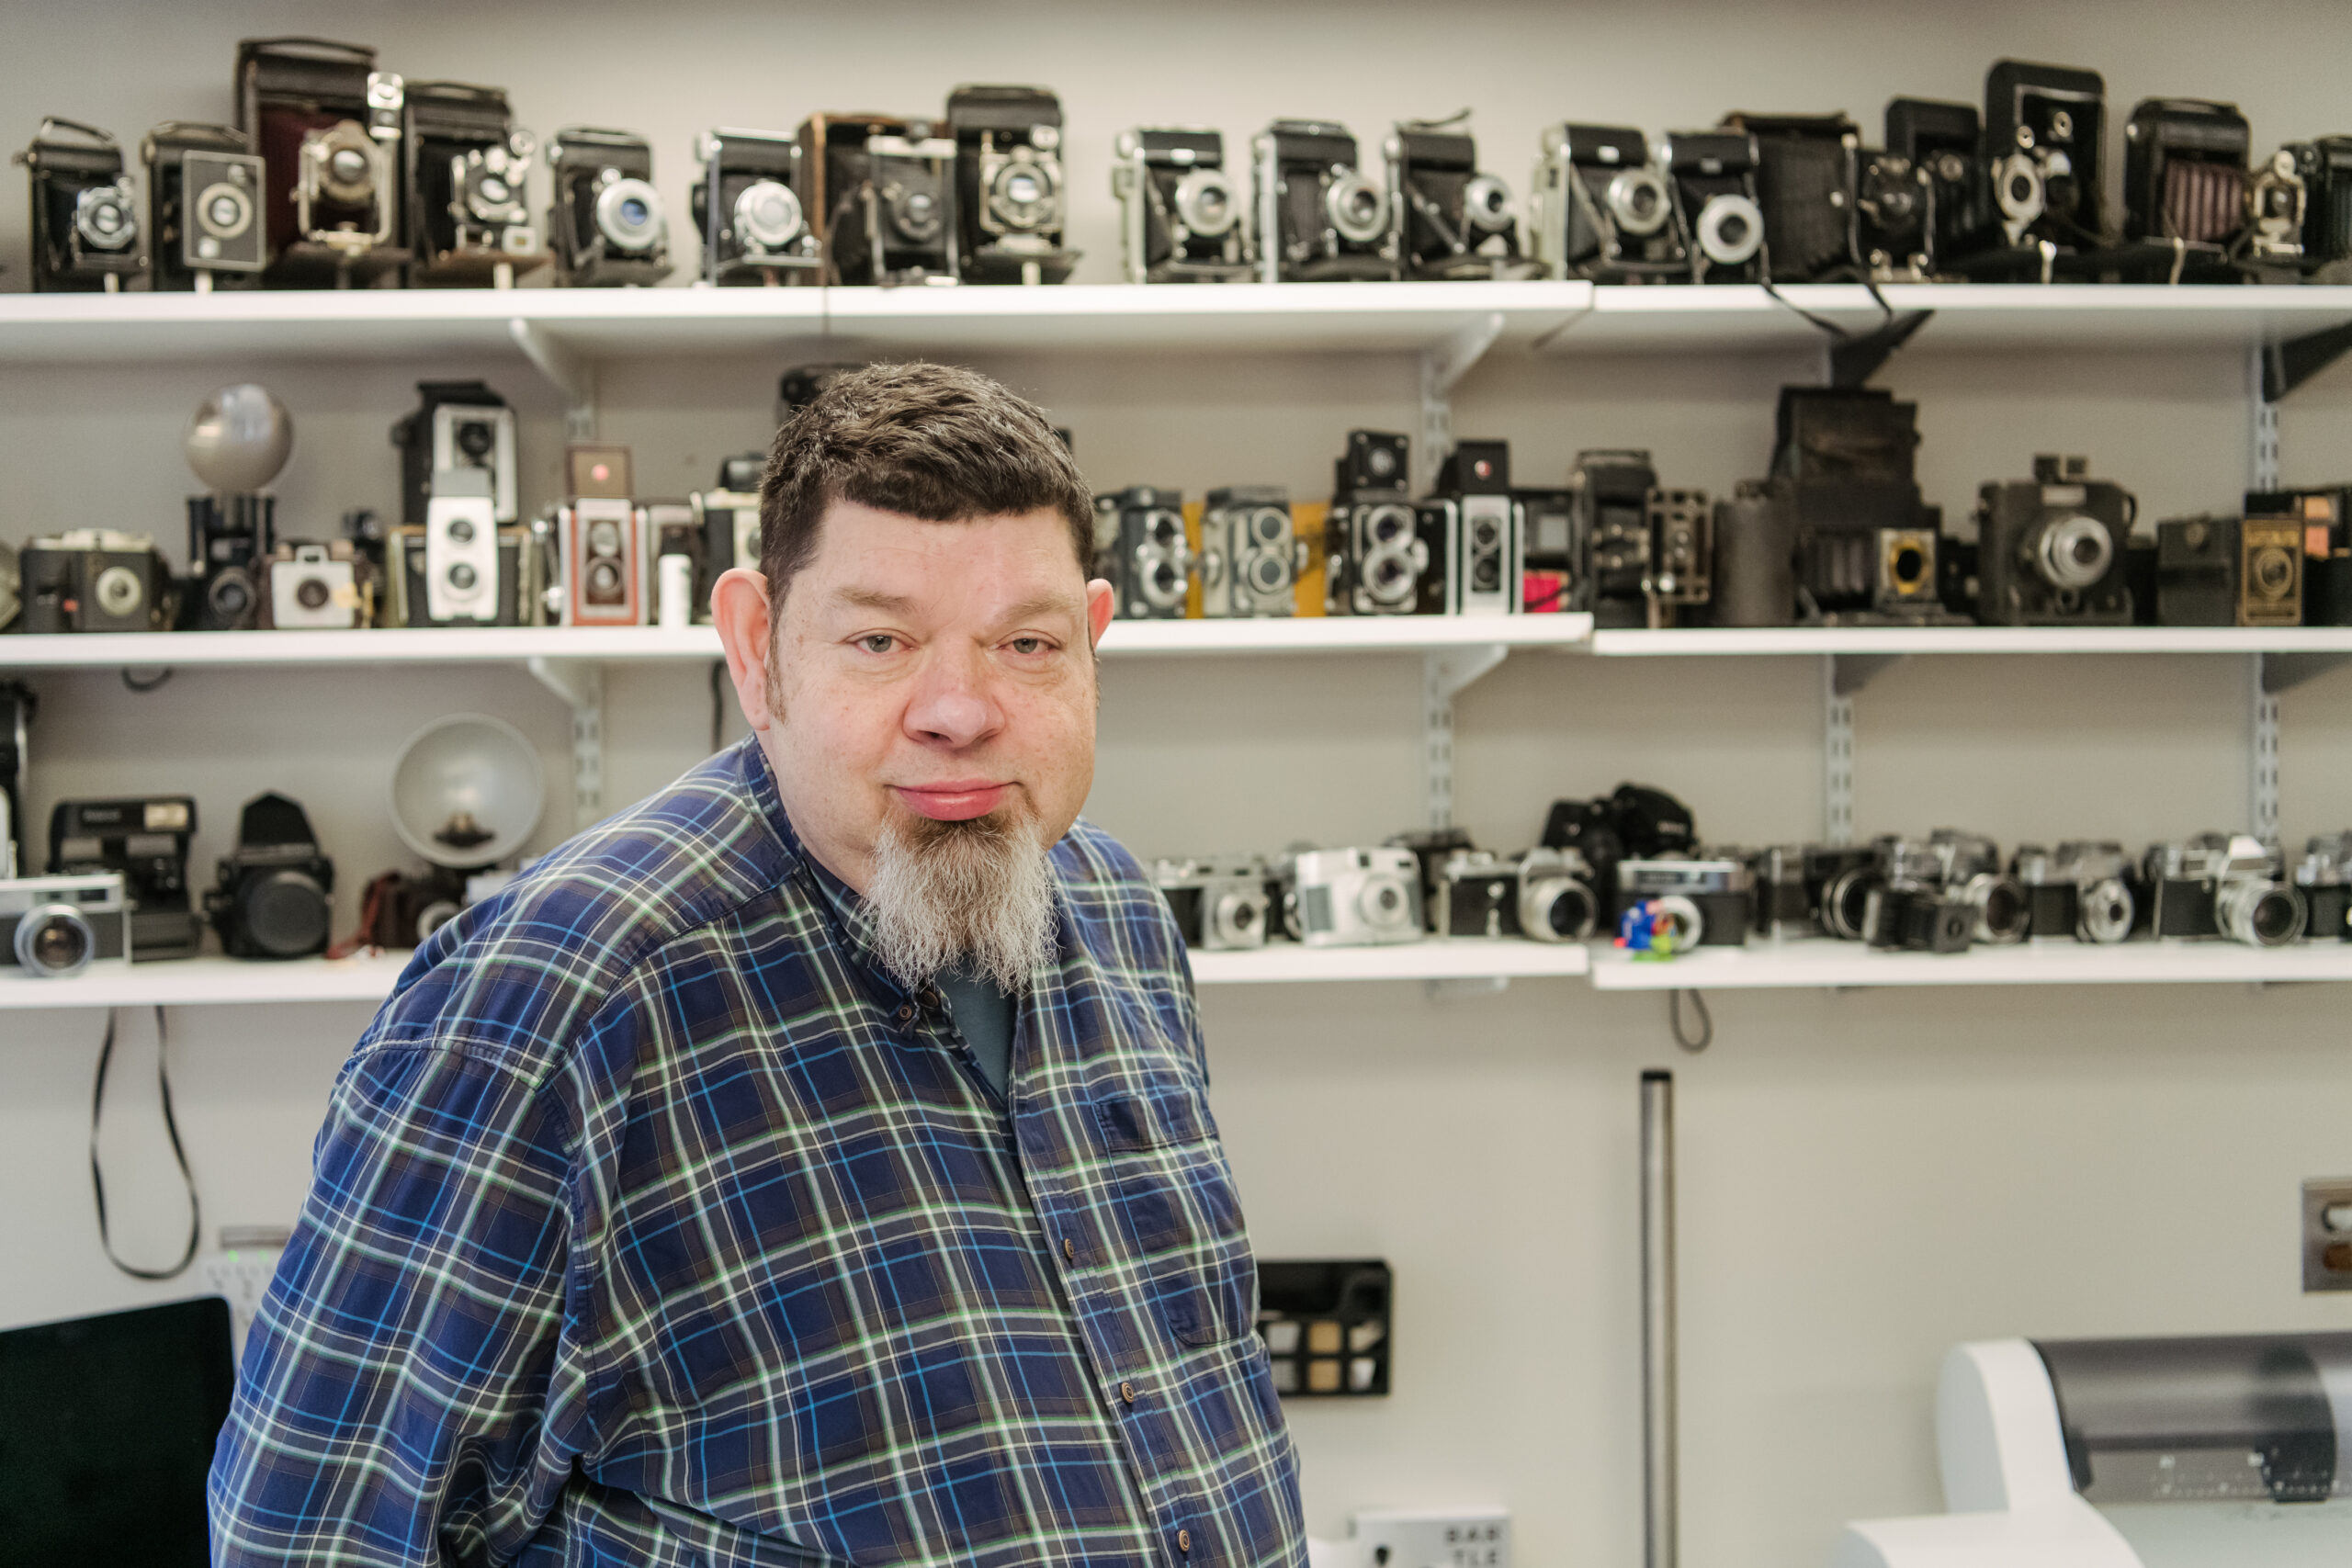 Peregoy displays a collection of vintage cameras.